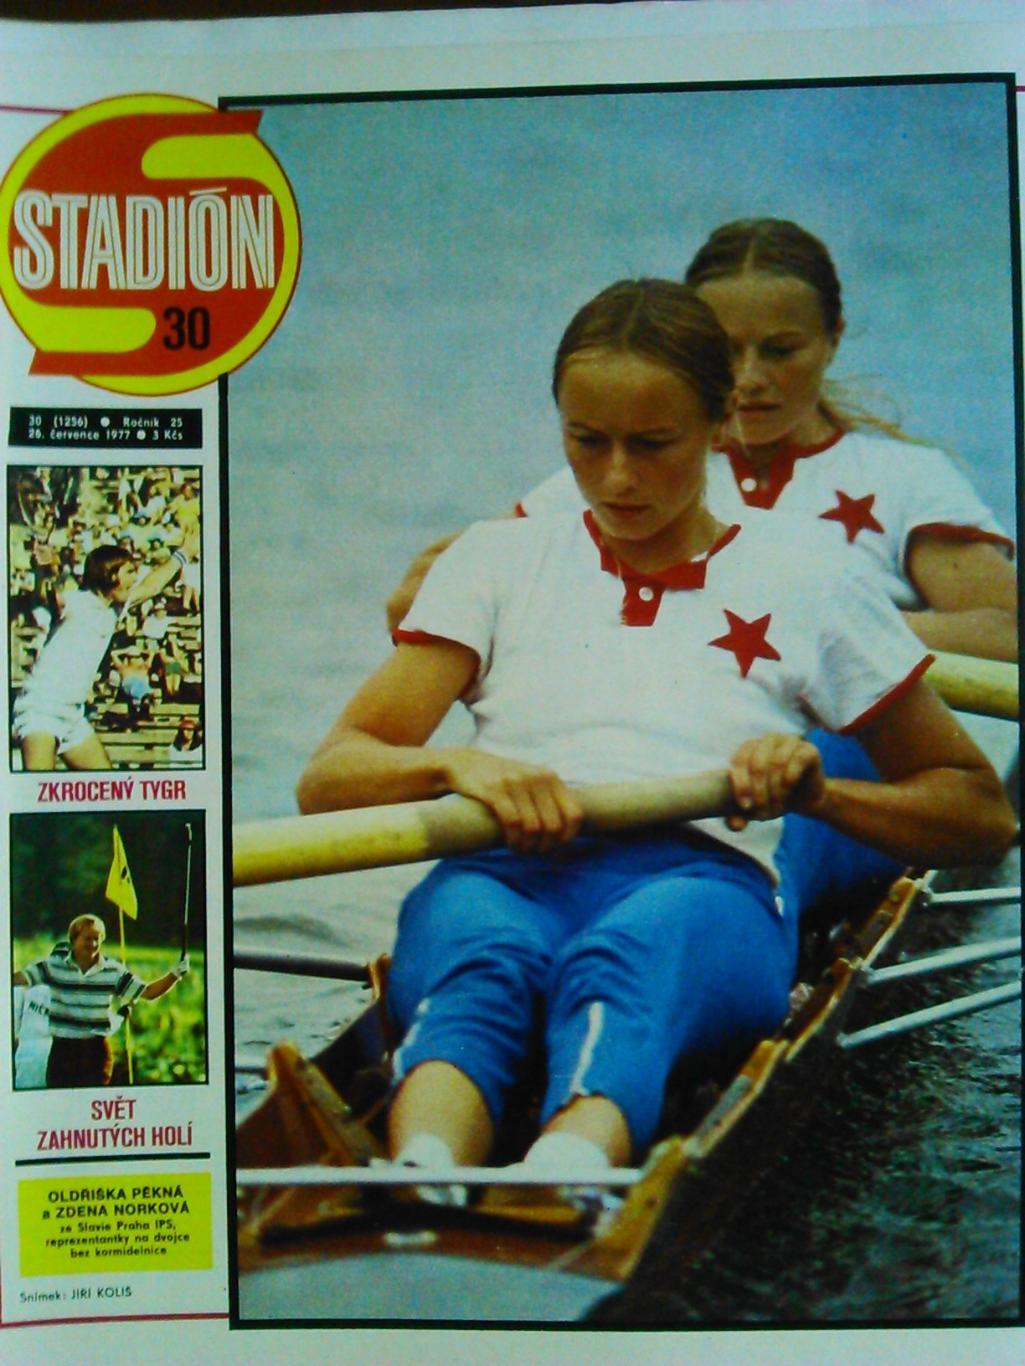 Stadion (Стадион).№ 30.1977.(Чех.). Футбол-Пеле.Теннис.Хоккей. Гуртом знижки 50%